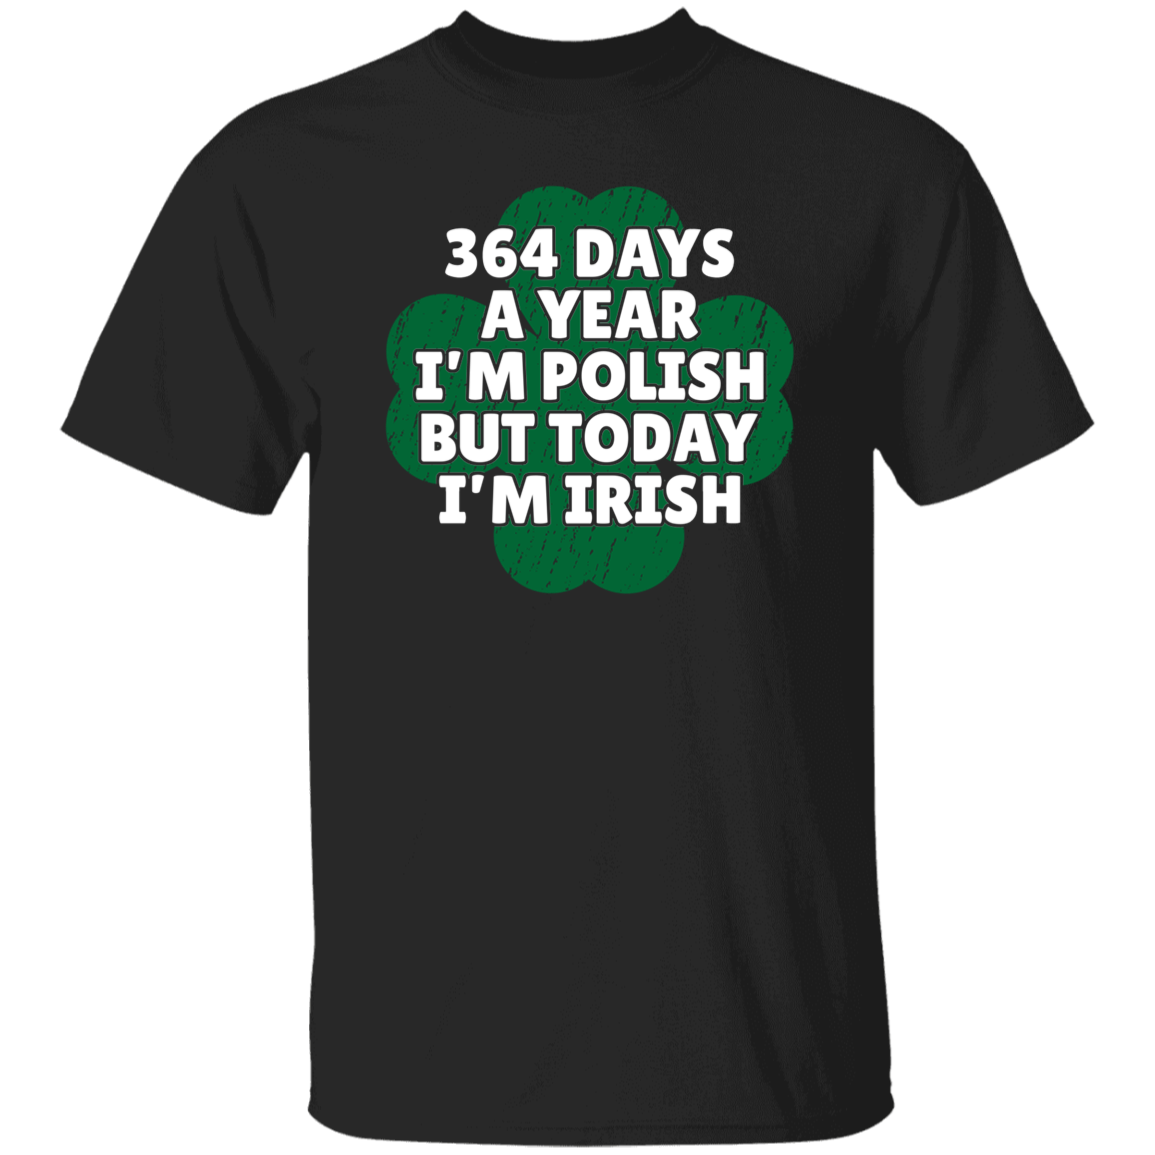 364 Days a Year I&#39;m Polish, But Today I&#39;m Irish Apparel CustomCat G500 5.3 oz. T-Shirt Black S